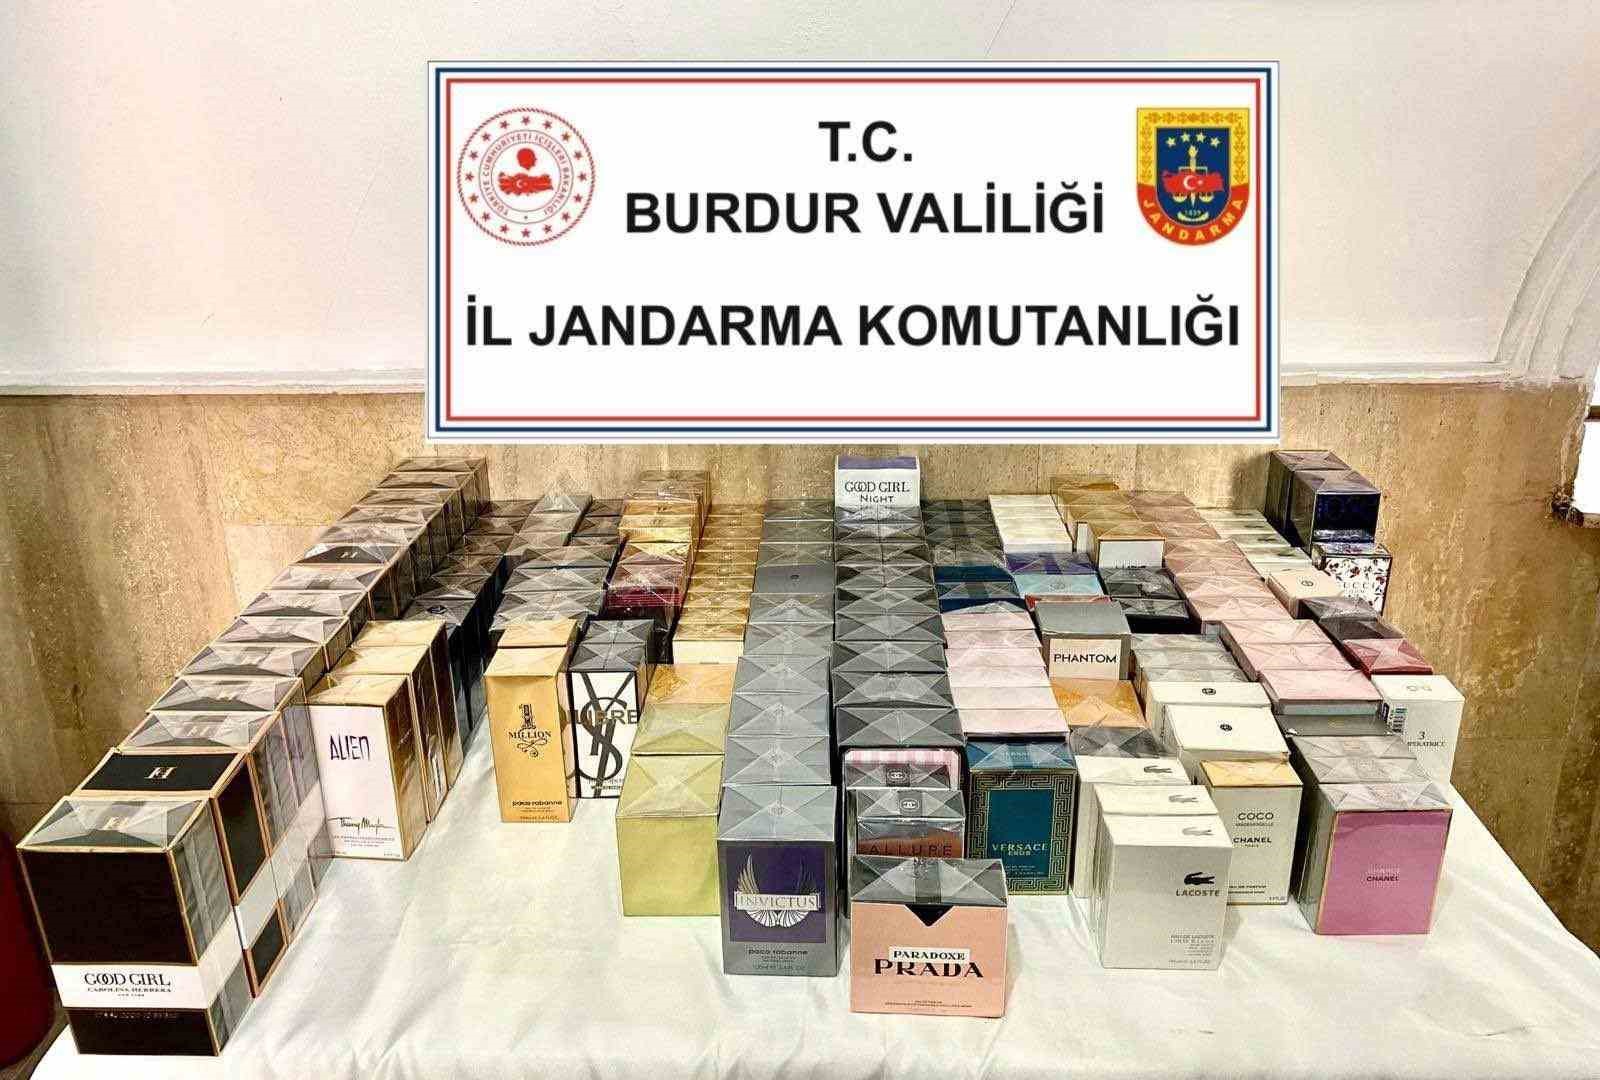 Burdur’da uyuşturucu operasyonunda 5 kişi tutuklu
